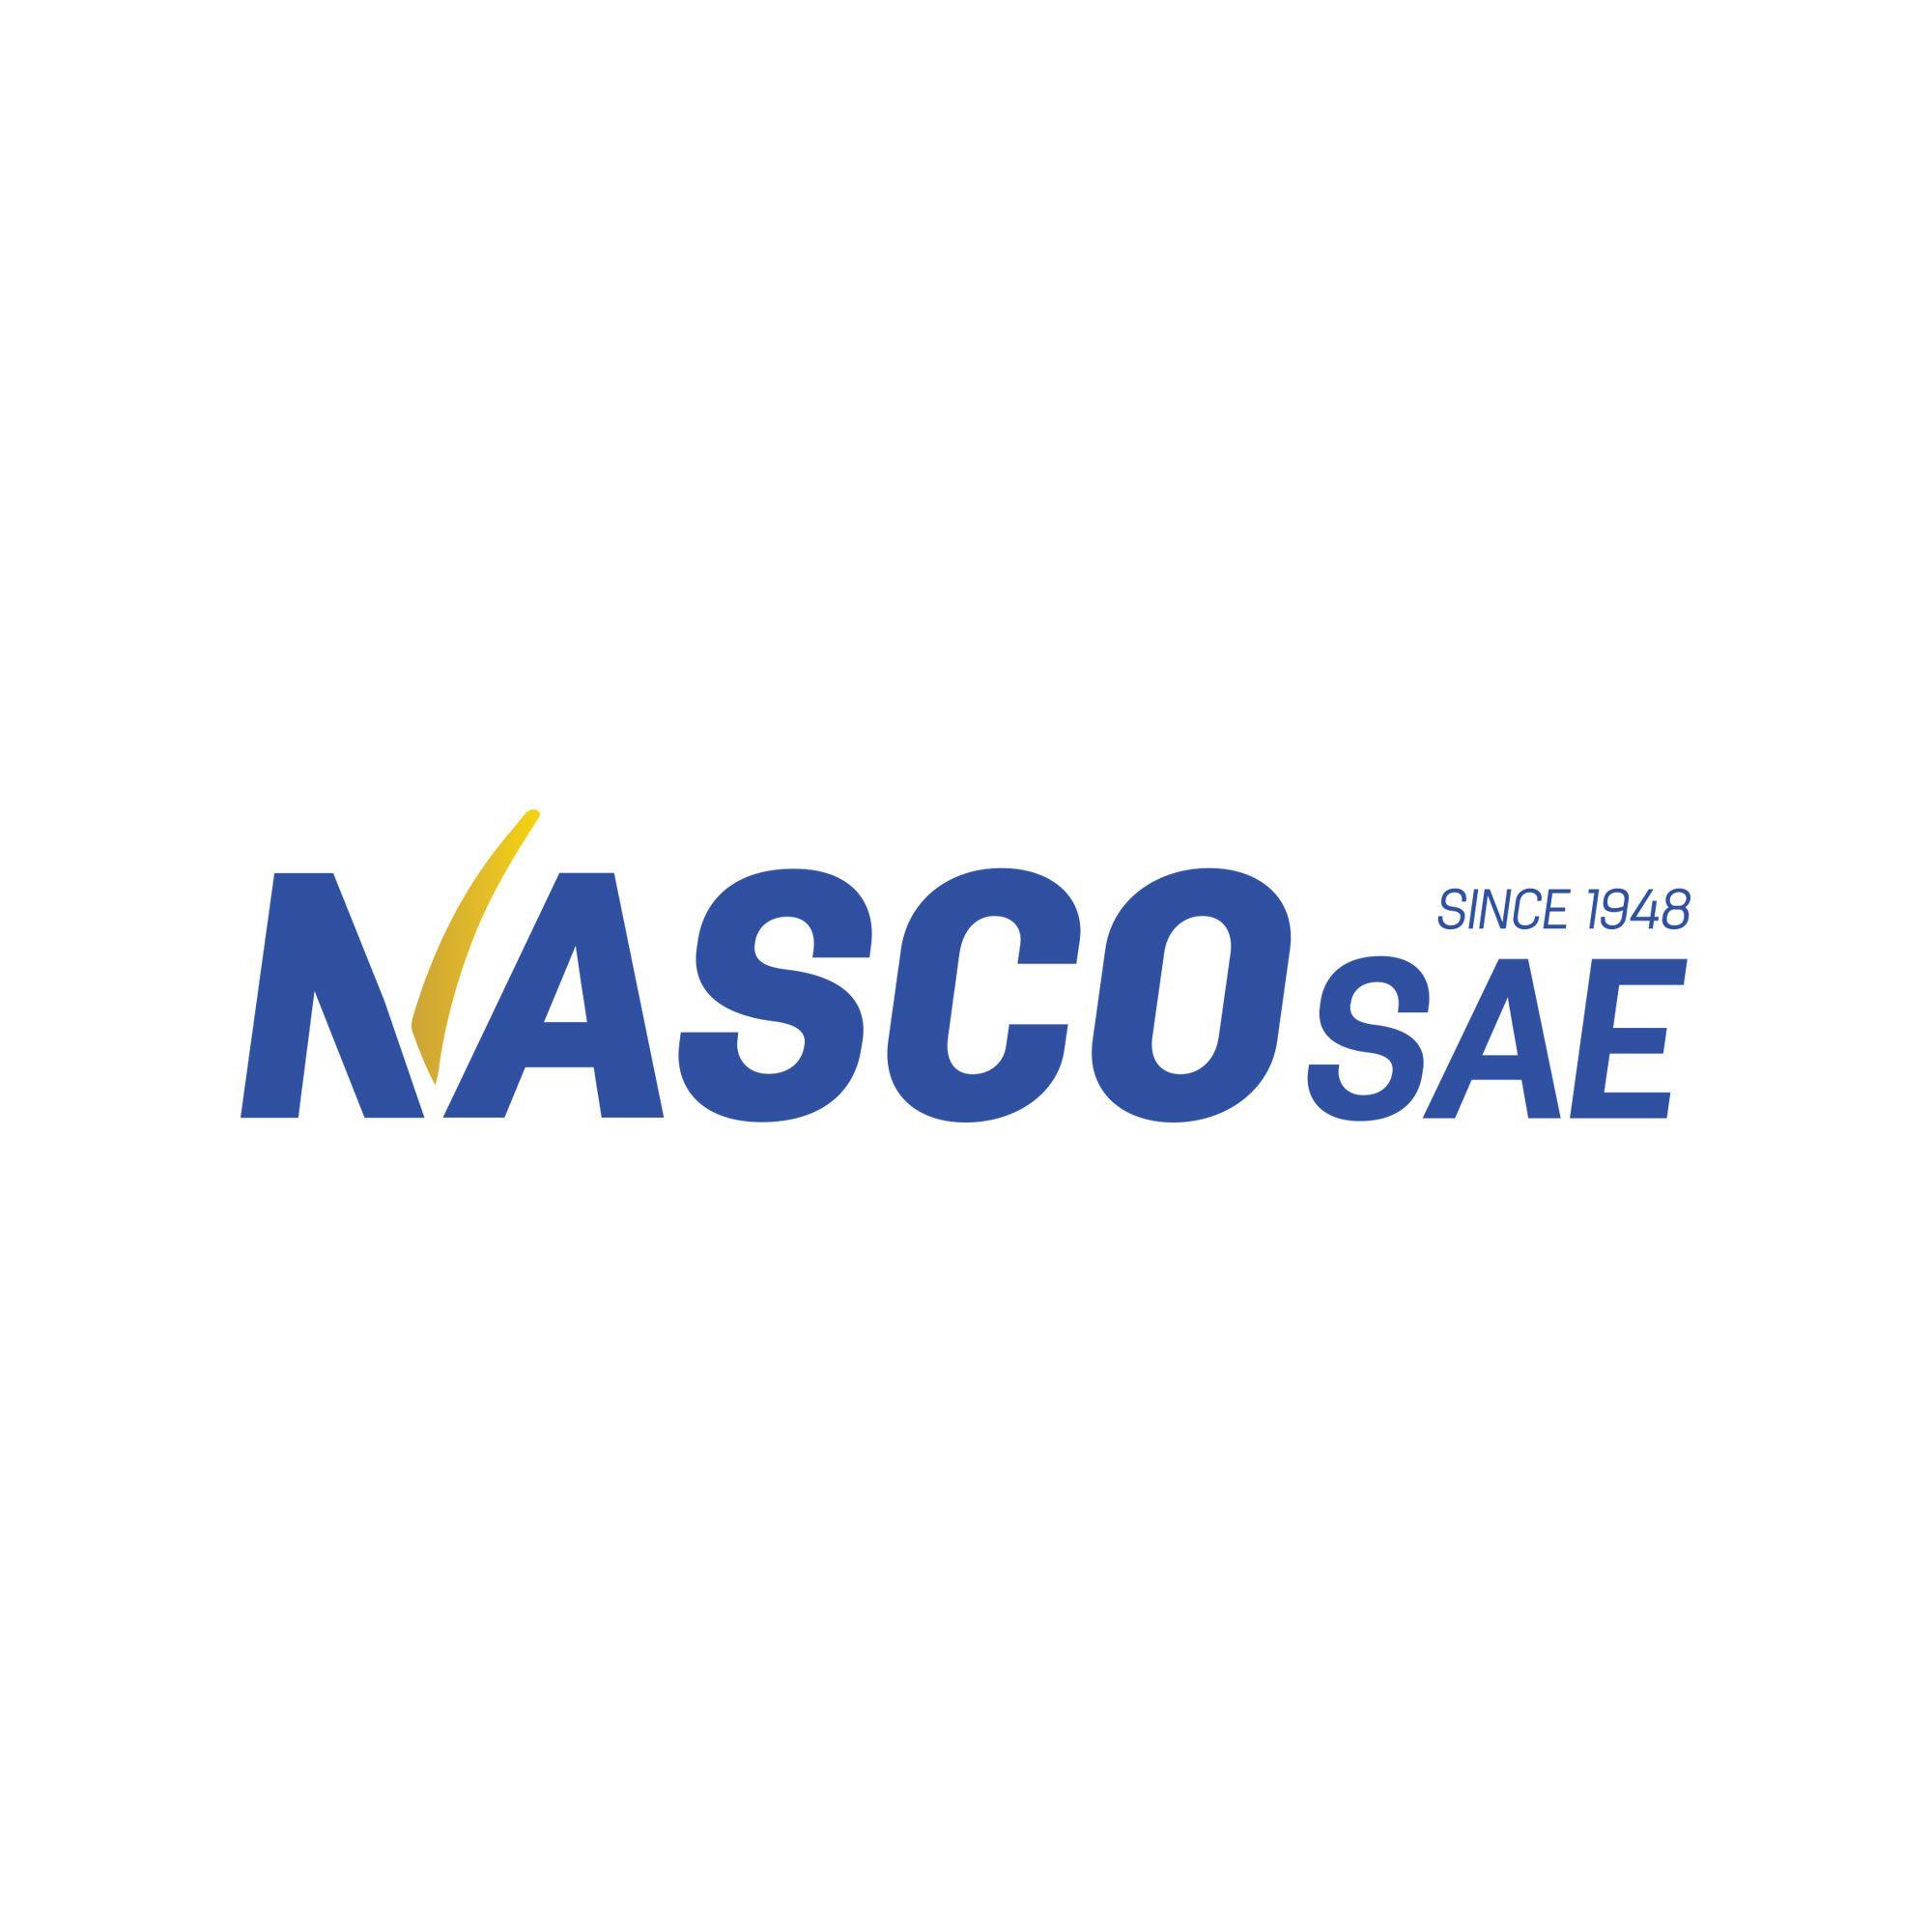 Nasco Logo - File:Nasco-sae-pp.jpg